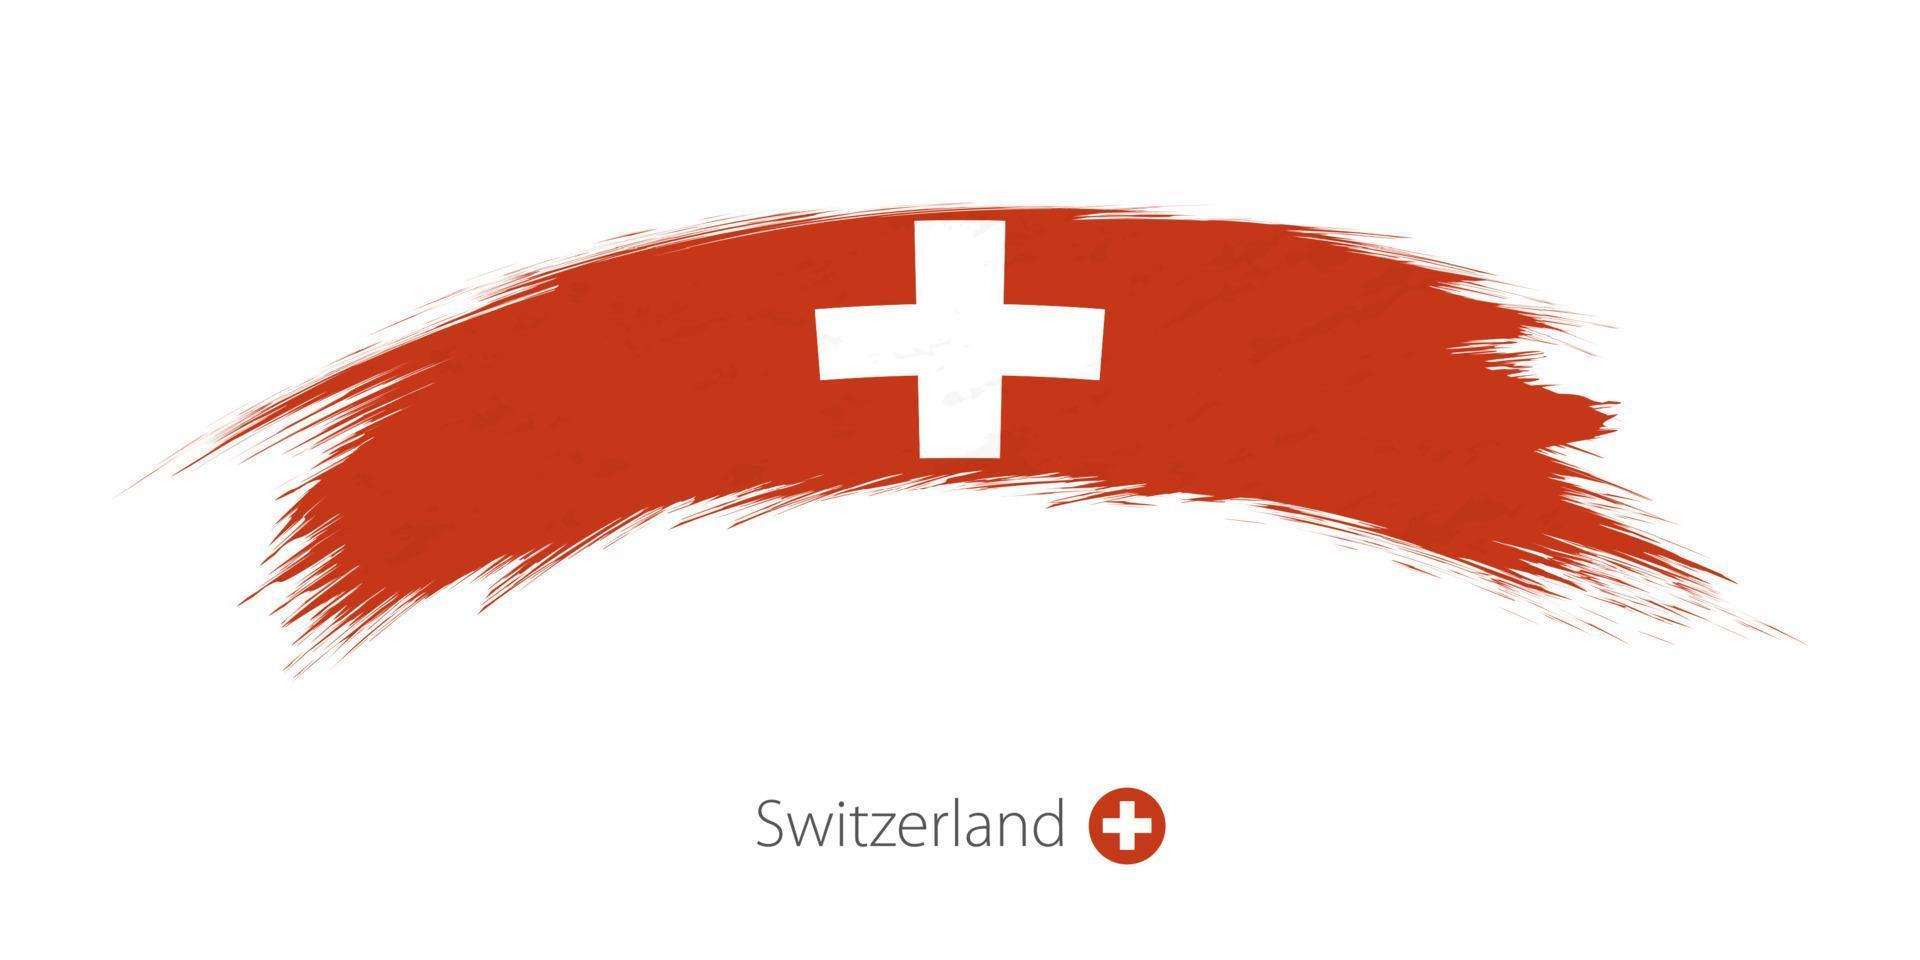 drapeau de la suisse en coup de pinceau grunge arrondi. vecteur